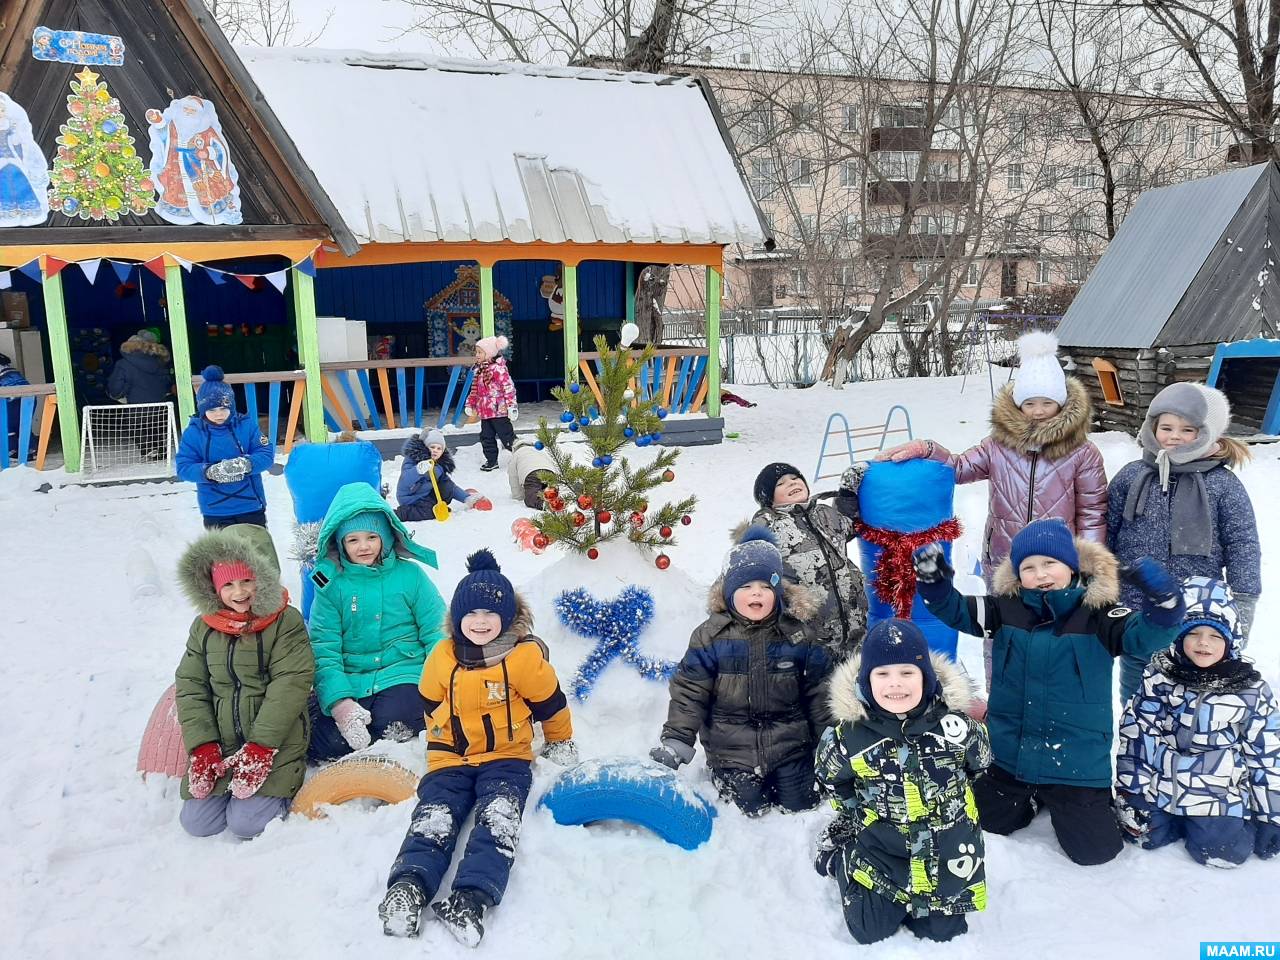 Федерация биатлона Амурской области разработала проект по выработке искусственного снега